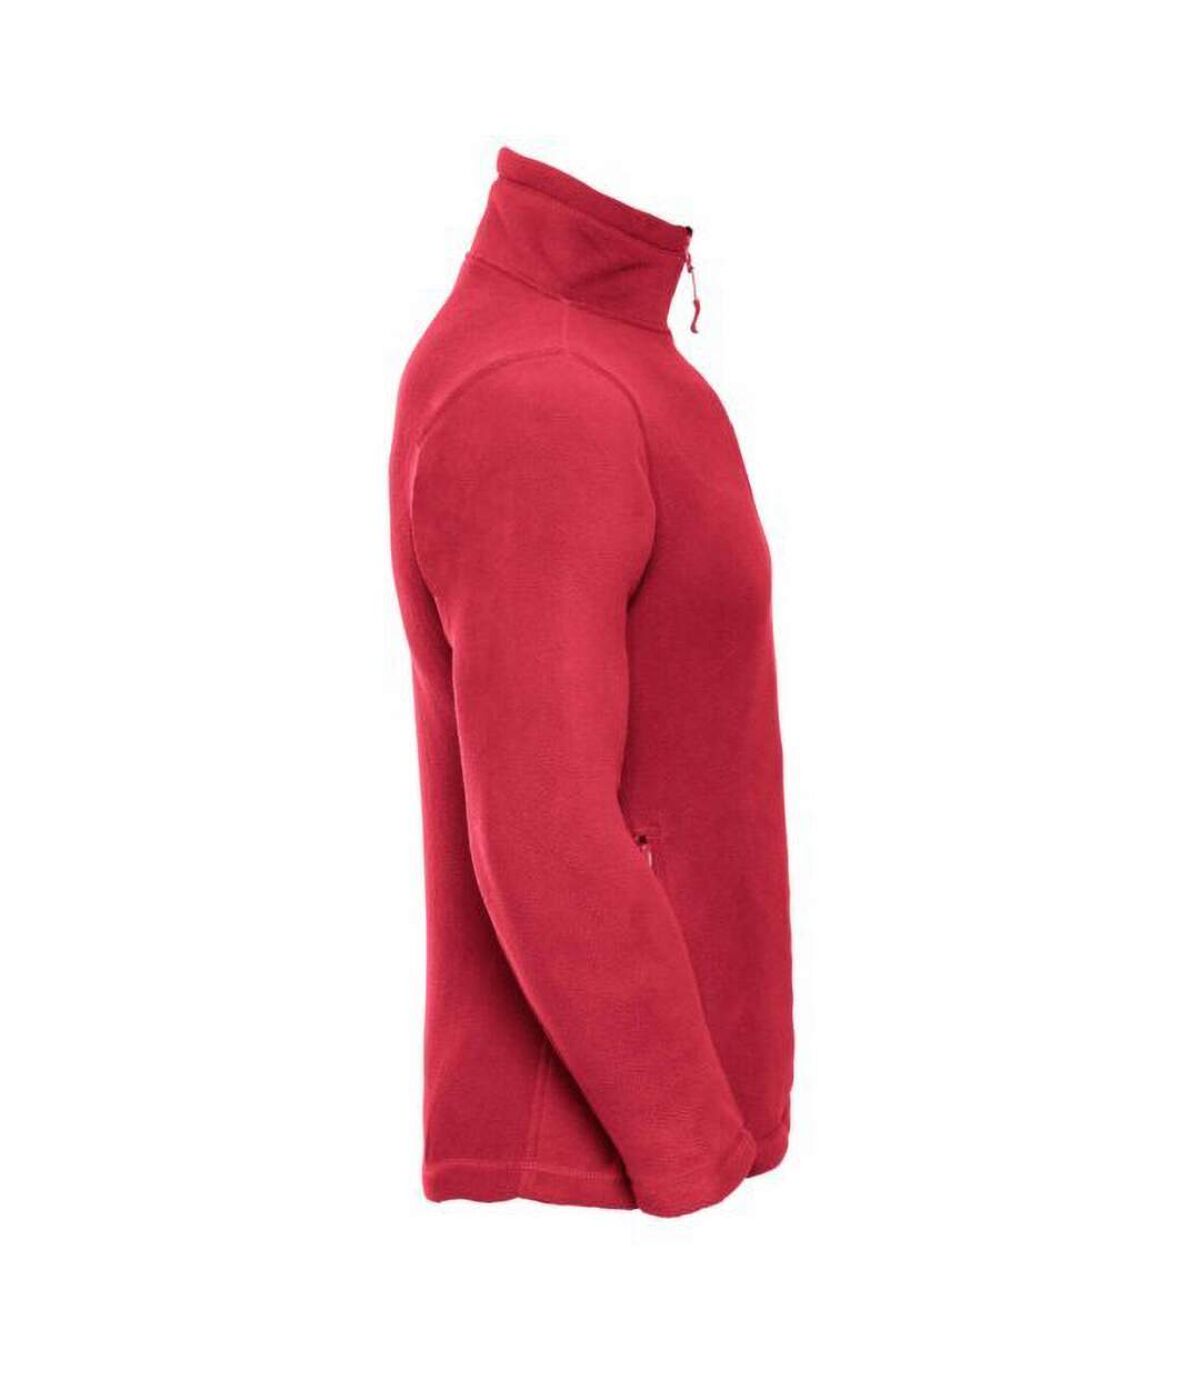 Russell Mens 1/4 Zip Outdoor Fleece Top (Classic Red) - UTBC1438